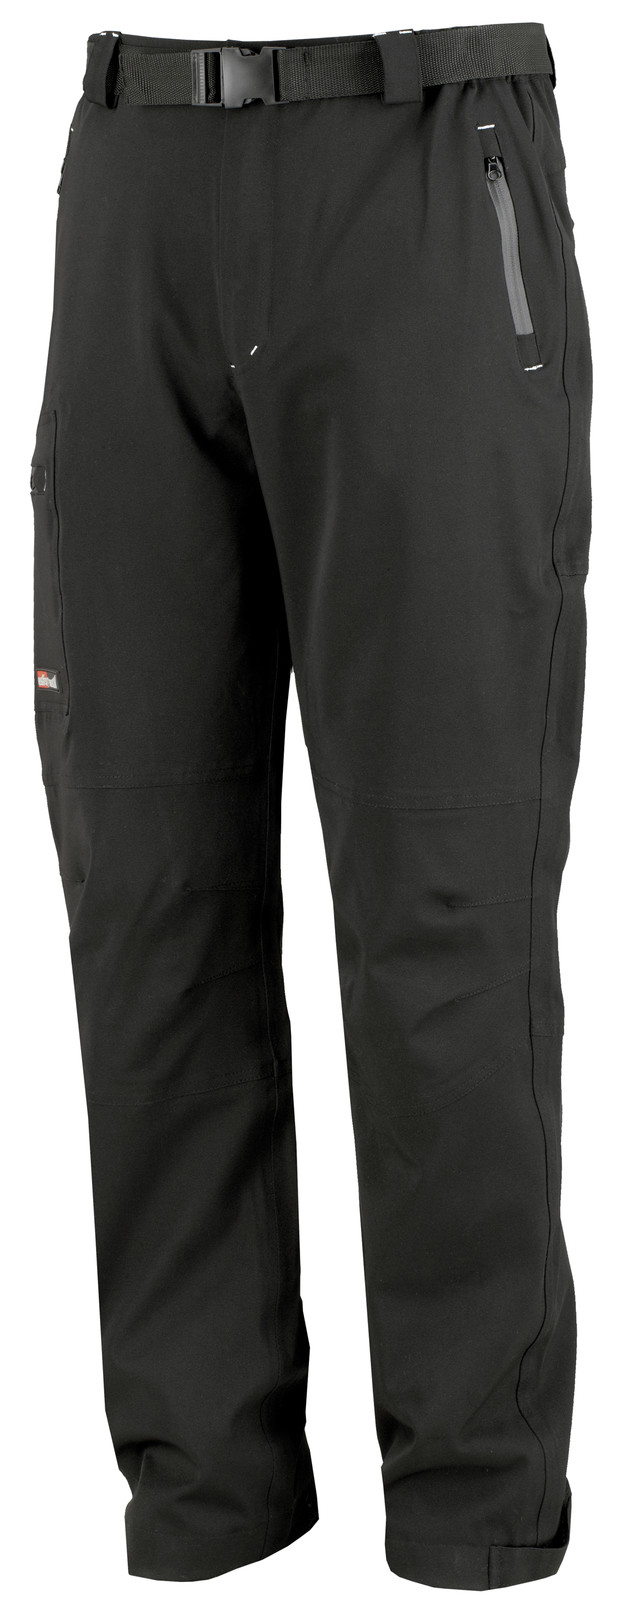 Pracovné nohavice Softshell - veľkosť: XXXL, farba: čierna